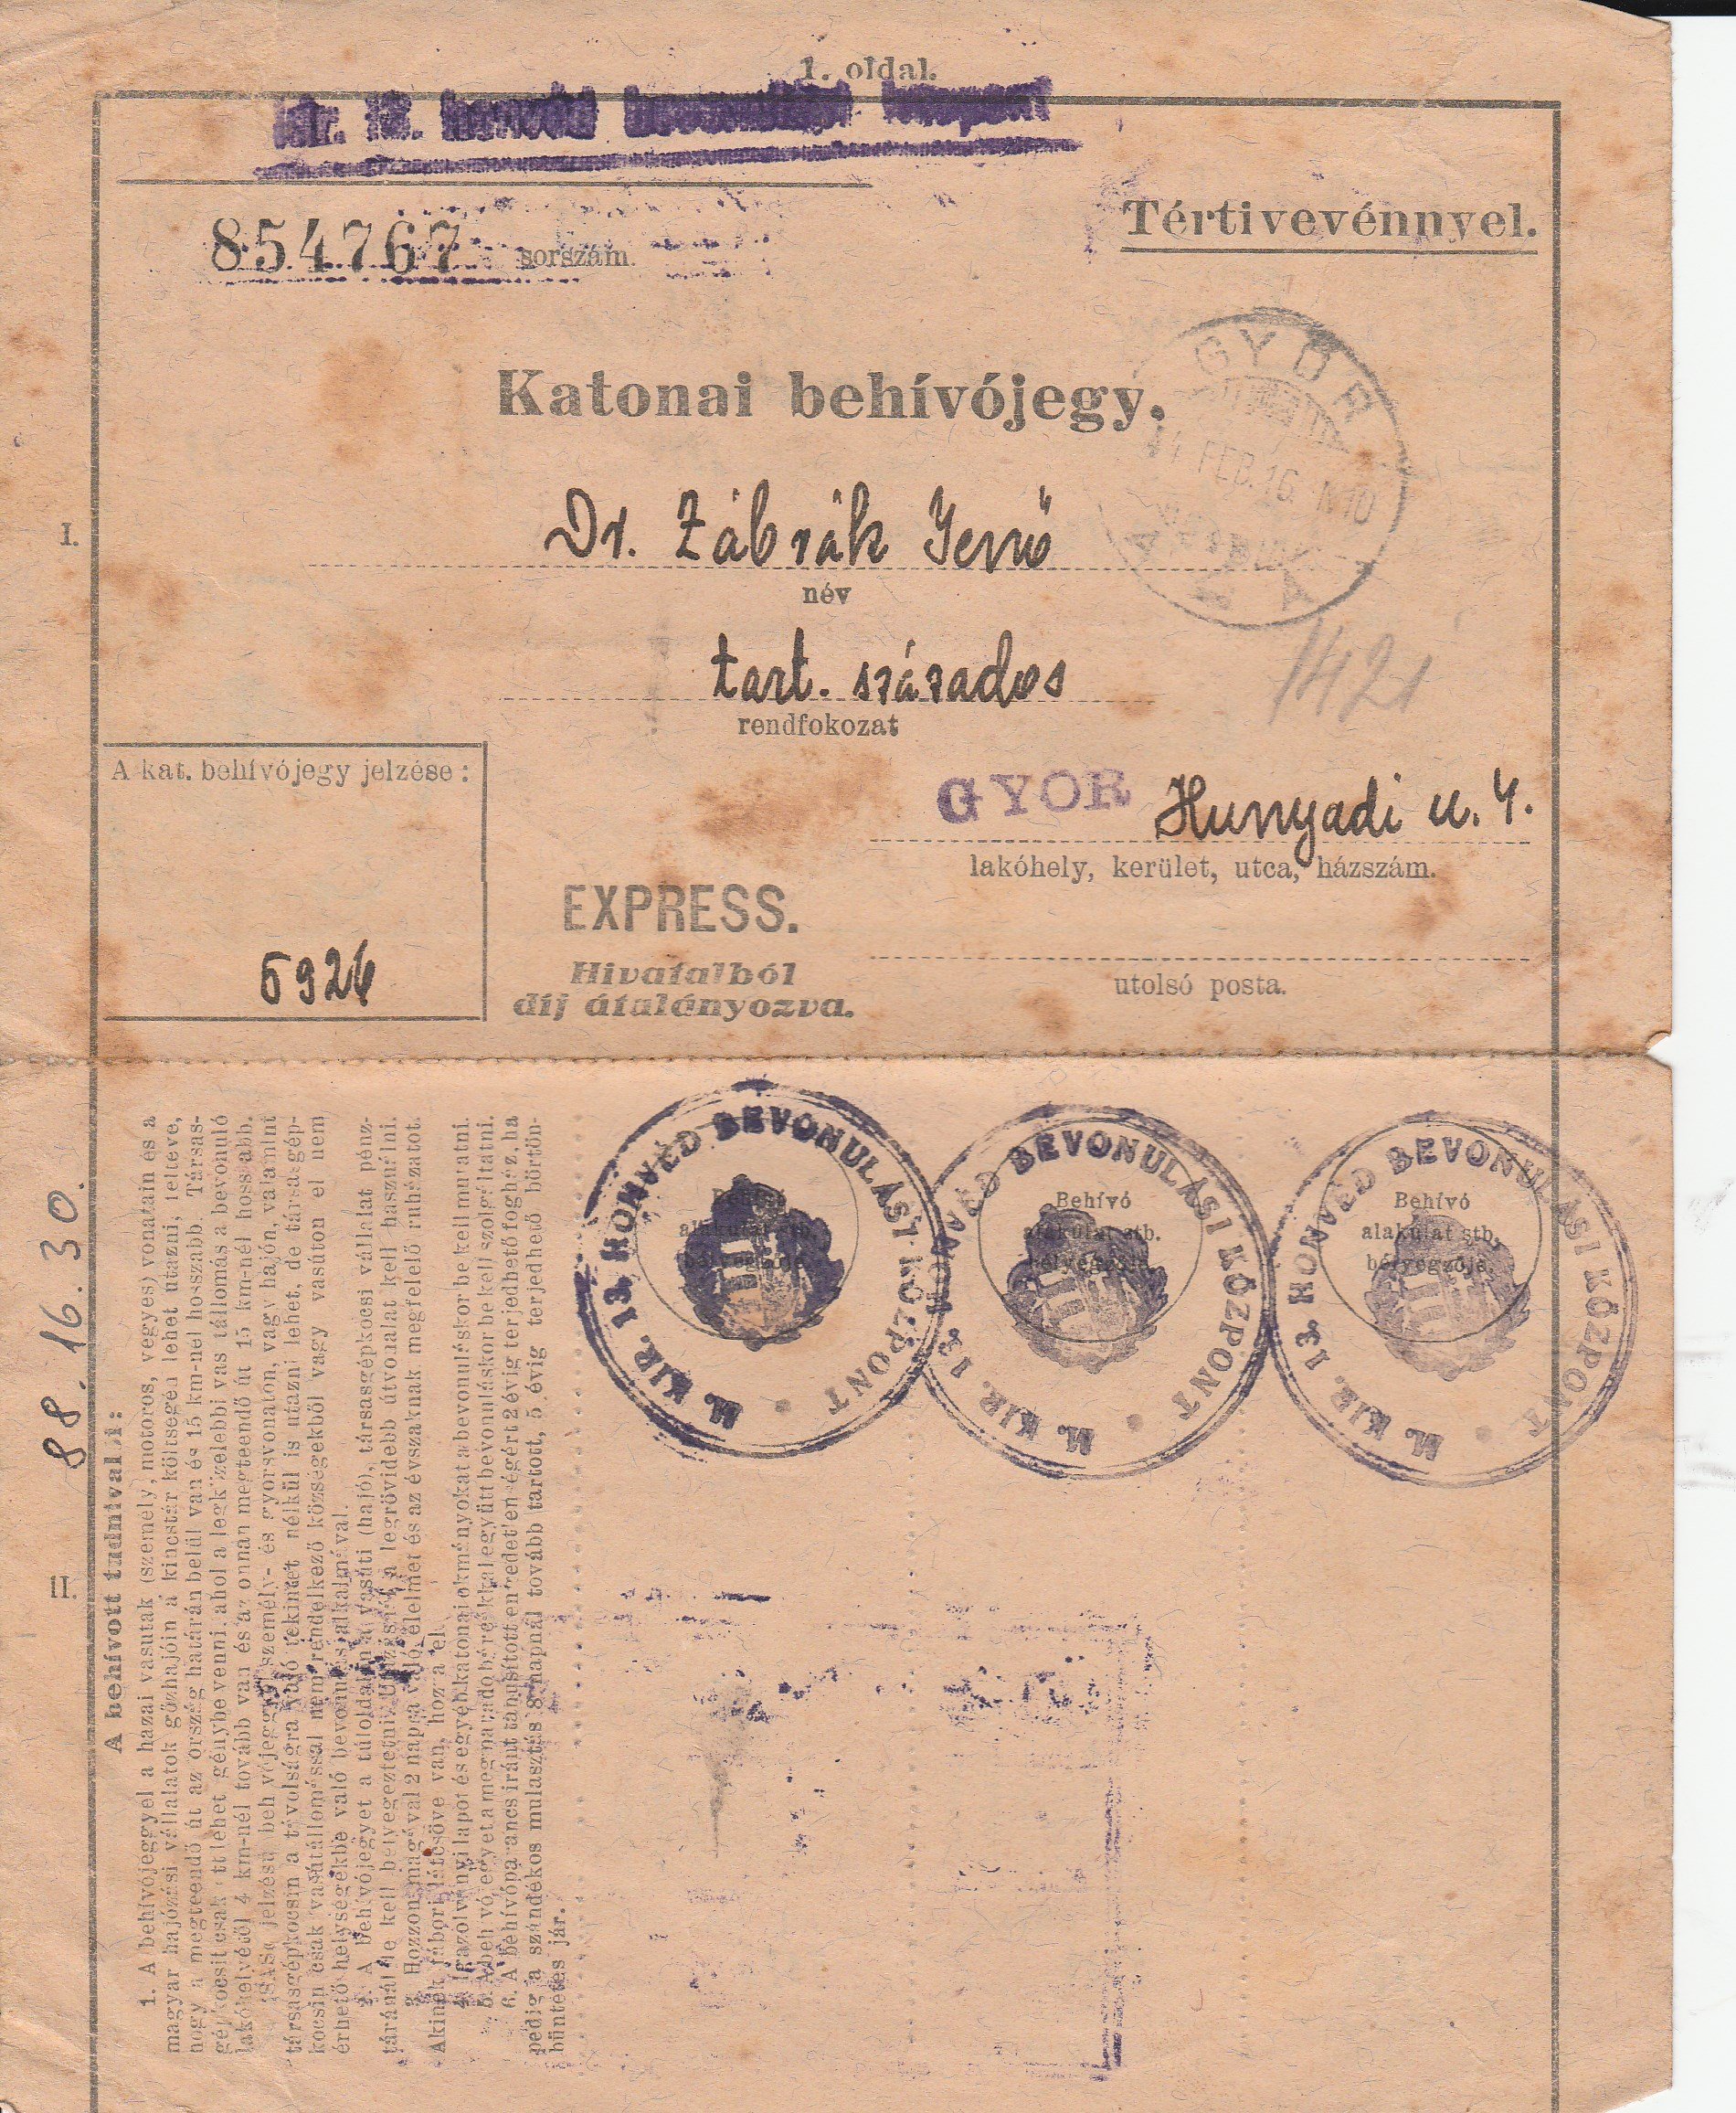 Dr. Zábrák Jenő katonai behívójegye 1944 (Tapolcai Városi Múzeum CC BY-NC-SA)